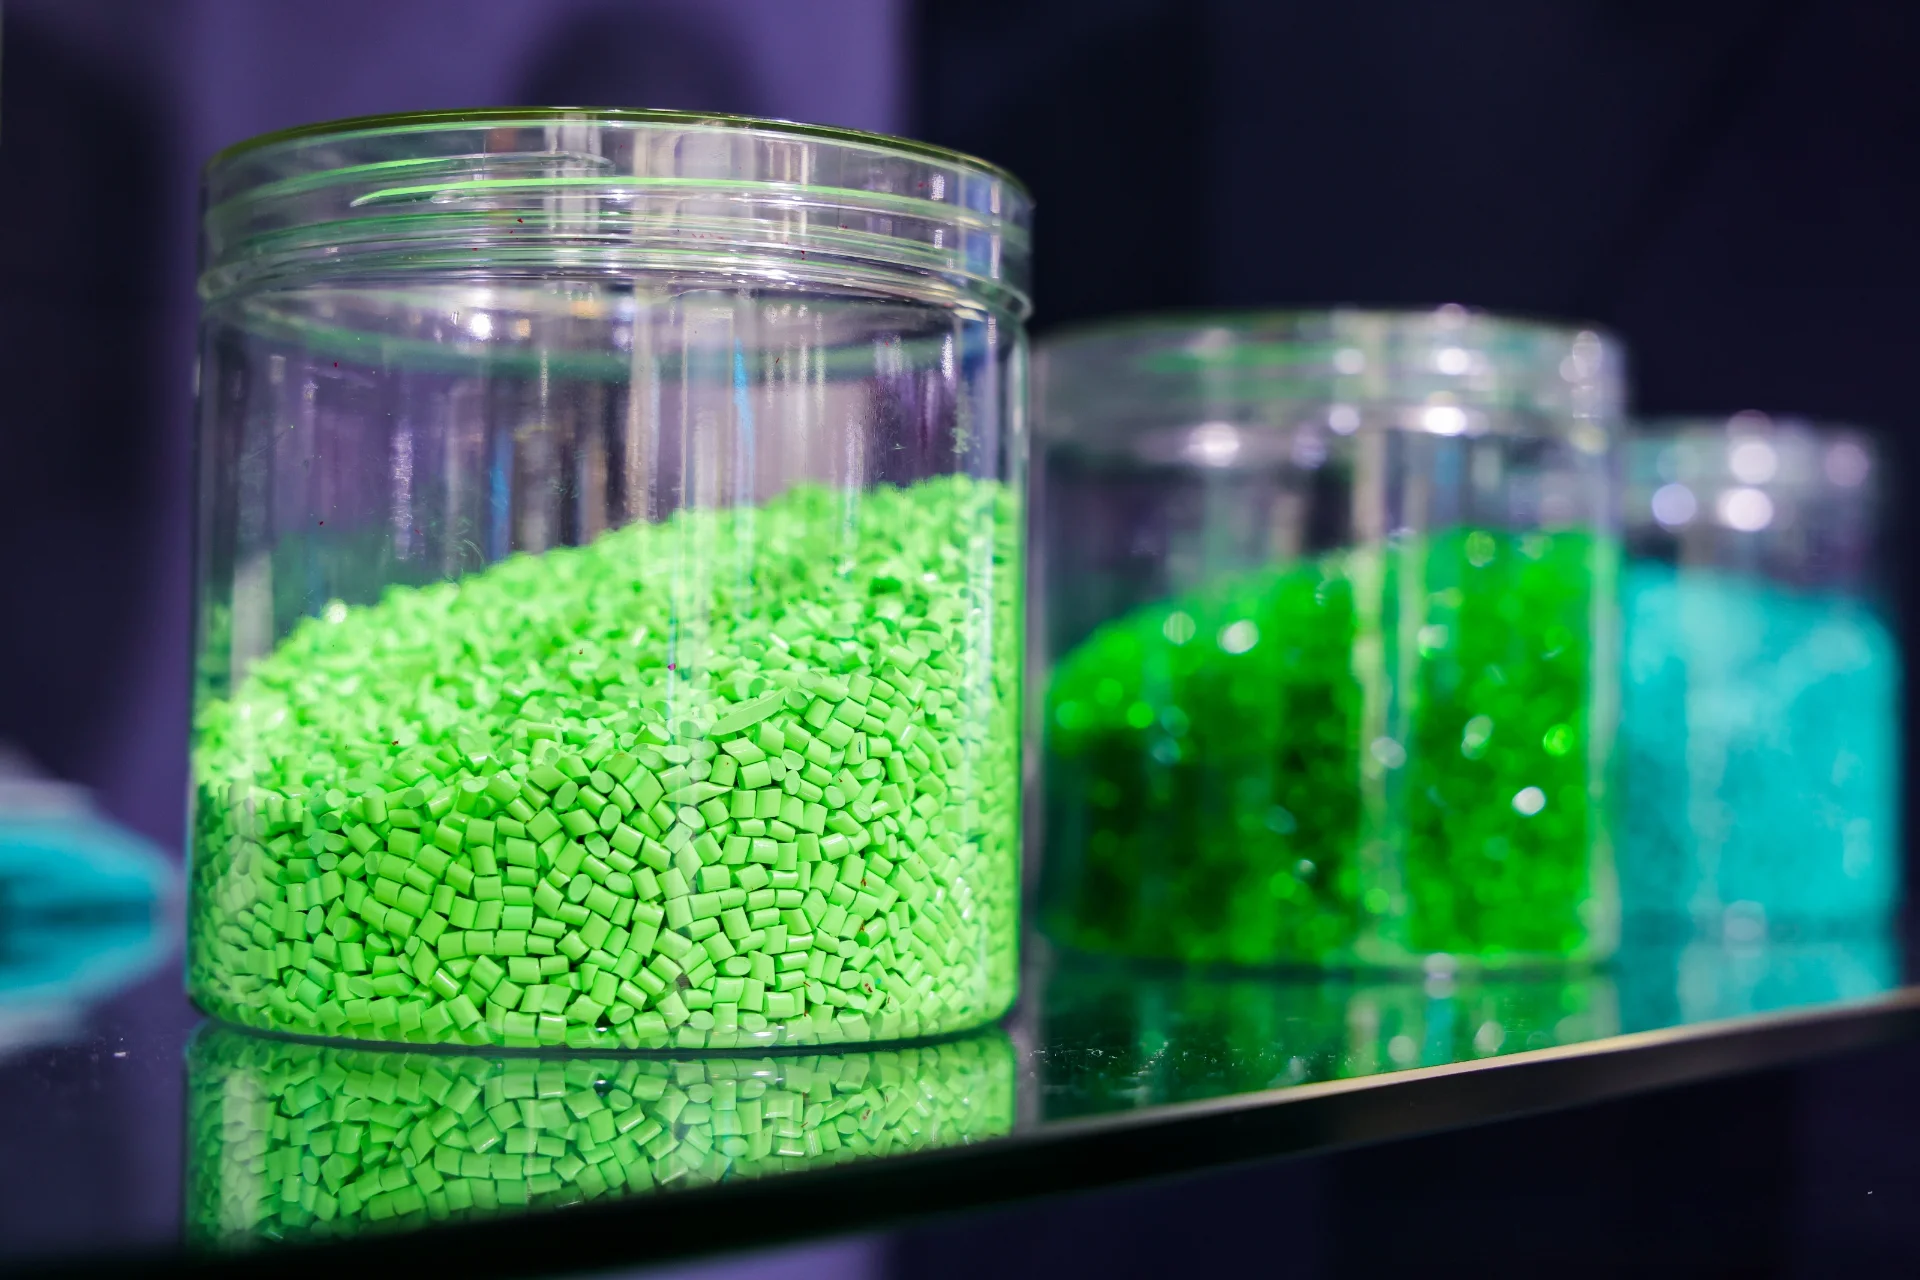 Resimde renkli plastik granüller içeren üç cam kavanozun yakından görünümü gösterilmektedir. Ön plandaki kavanoz parlak yeşil granüllerle doluyken arka plandaki kavanozlar yeşil ve mavinin farklı tonlarını içeriyor. Bu granüller tipik olarak plastik endüstrisinde enjeksiyon kalıplama ve ekstrüzyon gibi işlemler yoluyla çeşitli plastik ürünlerin imalatında hammadde olarak kullanılır.